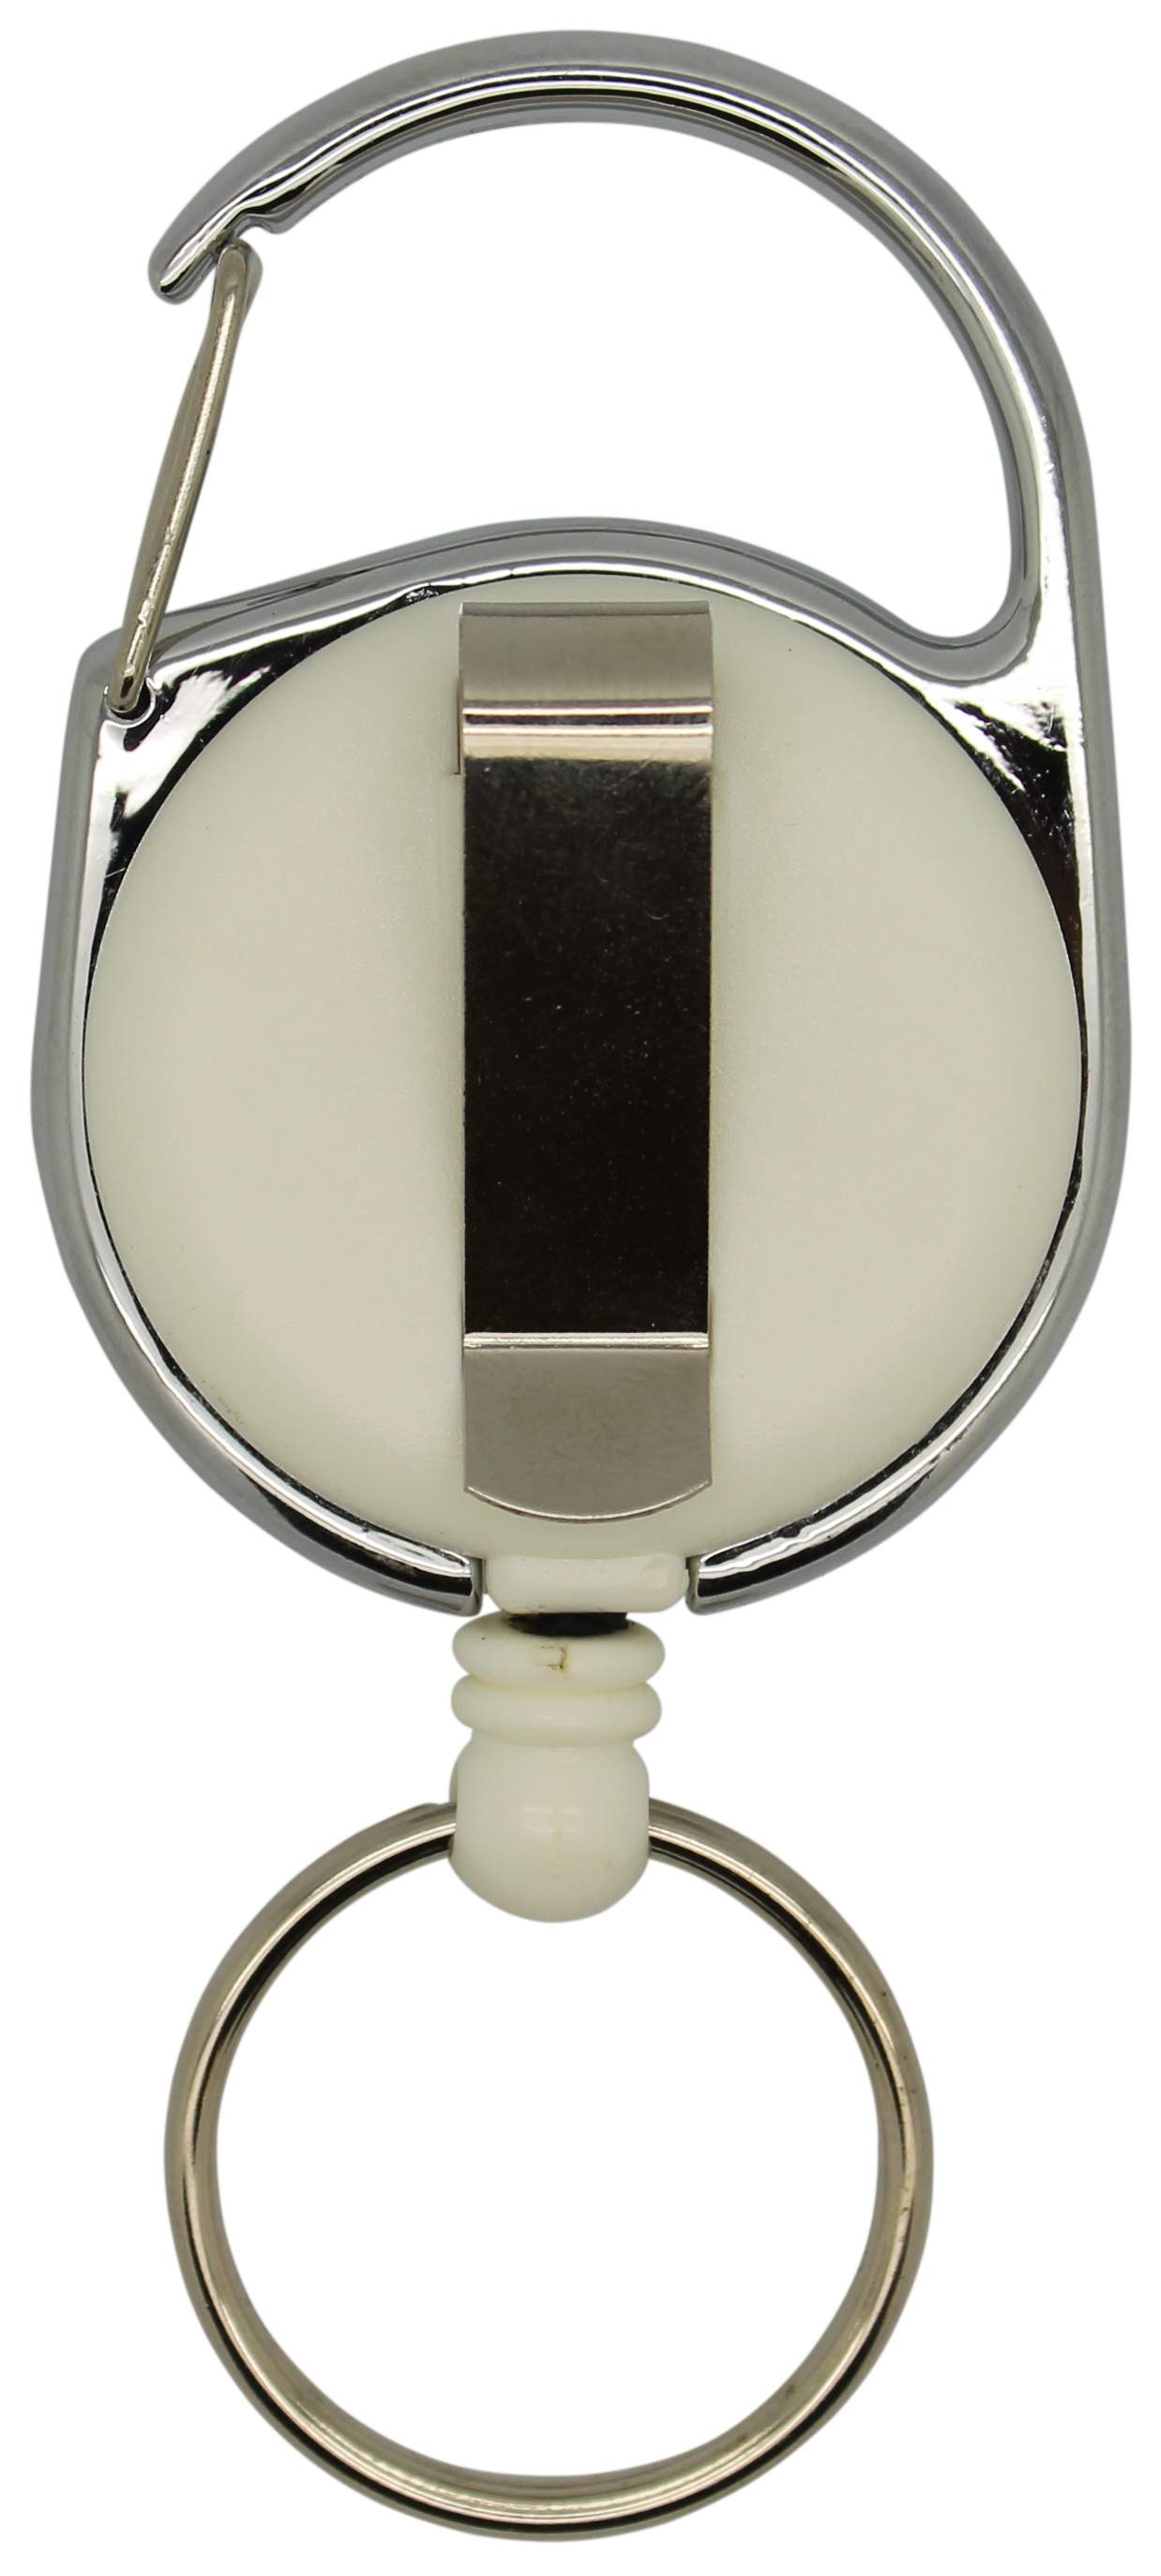 Jojo rund, vollfarbig weiß, Karabinerhaken, Schlüsselring, Nylonschnur 60 cm 